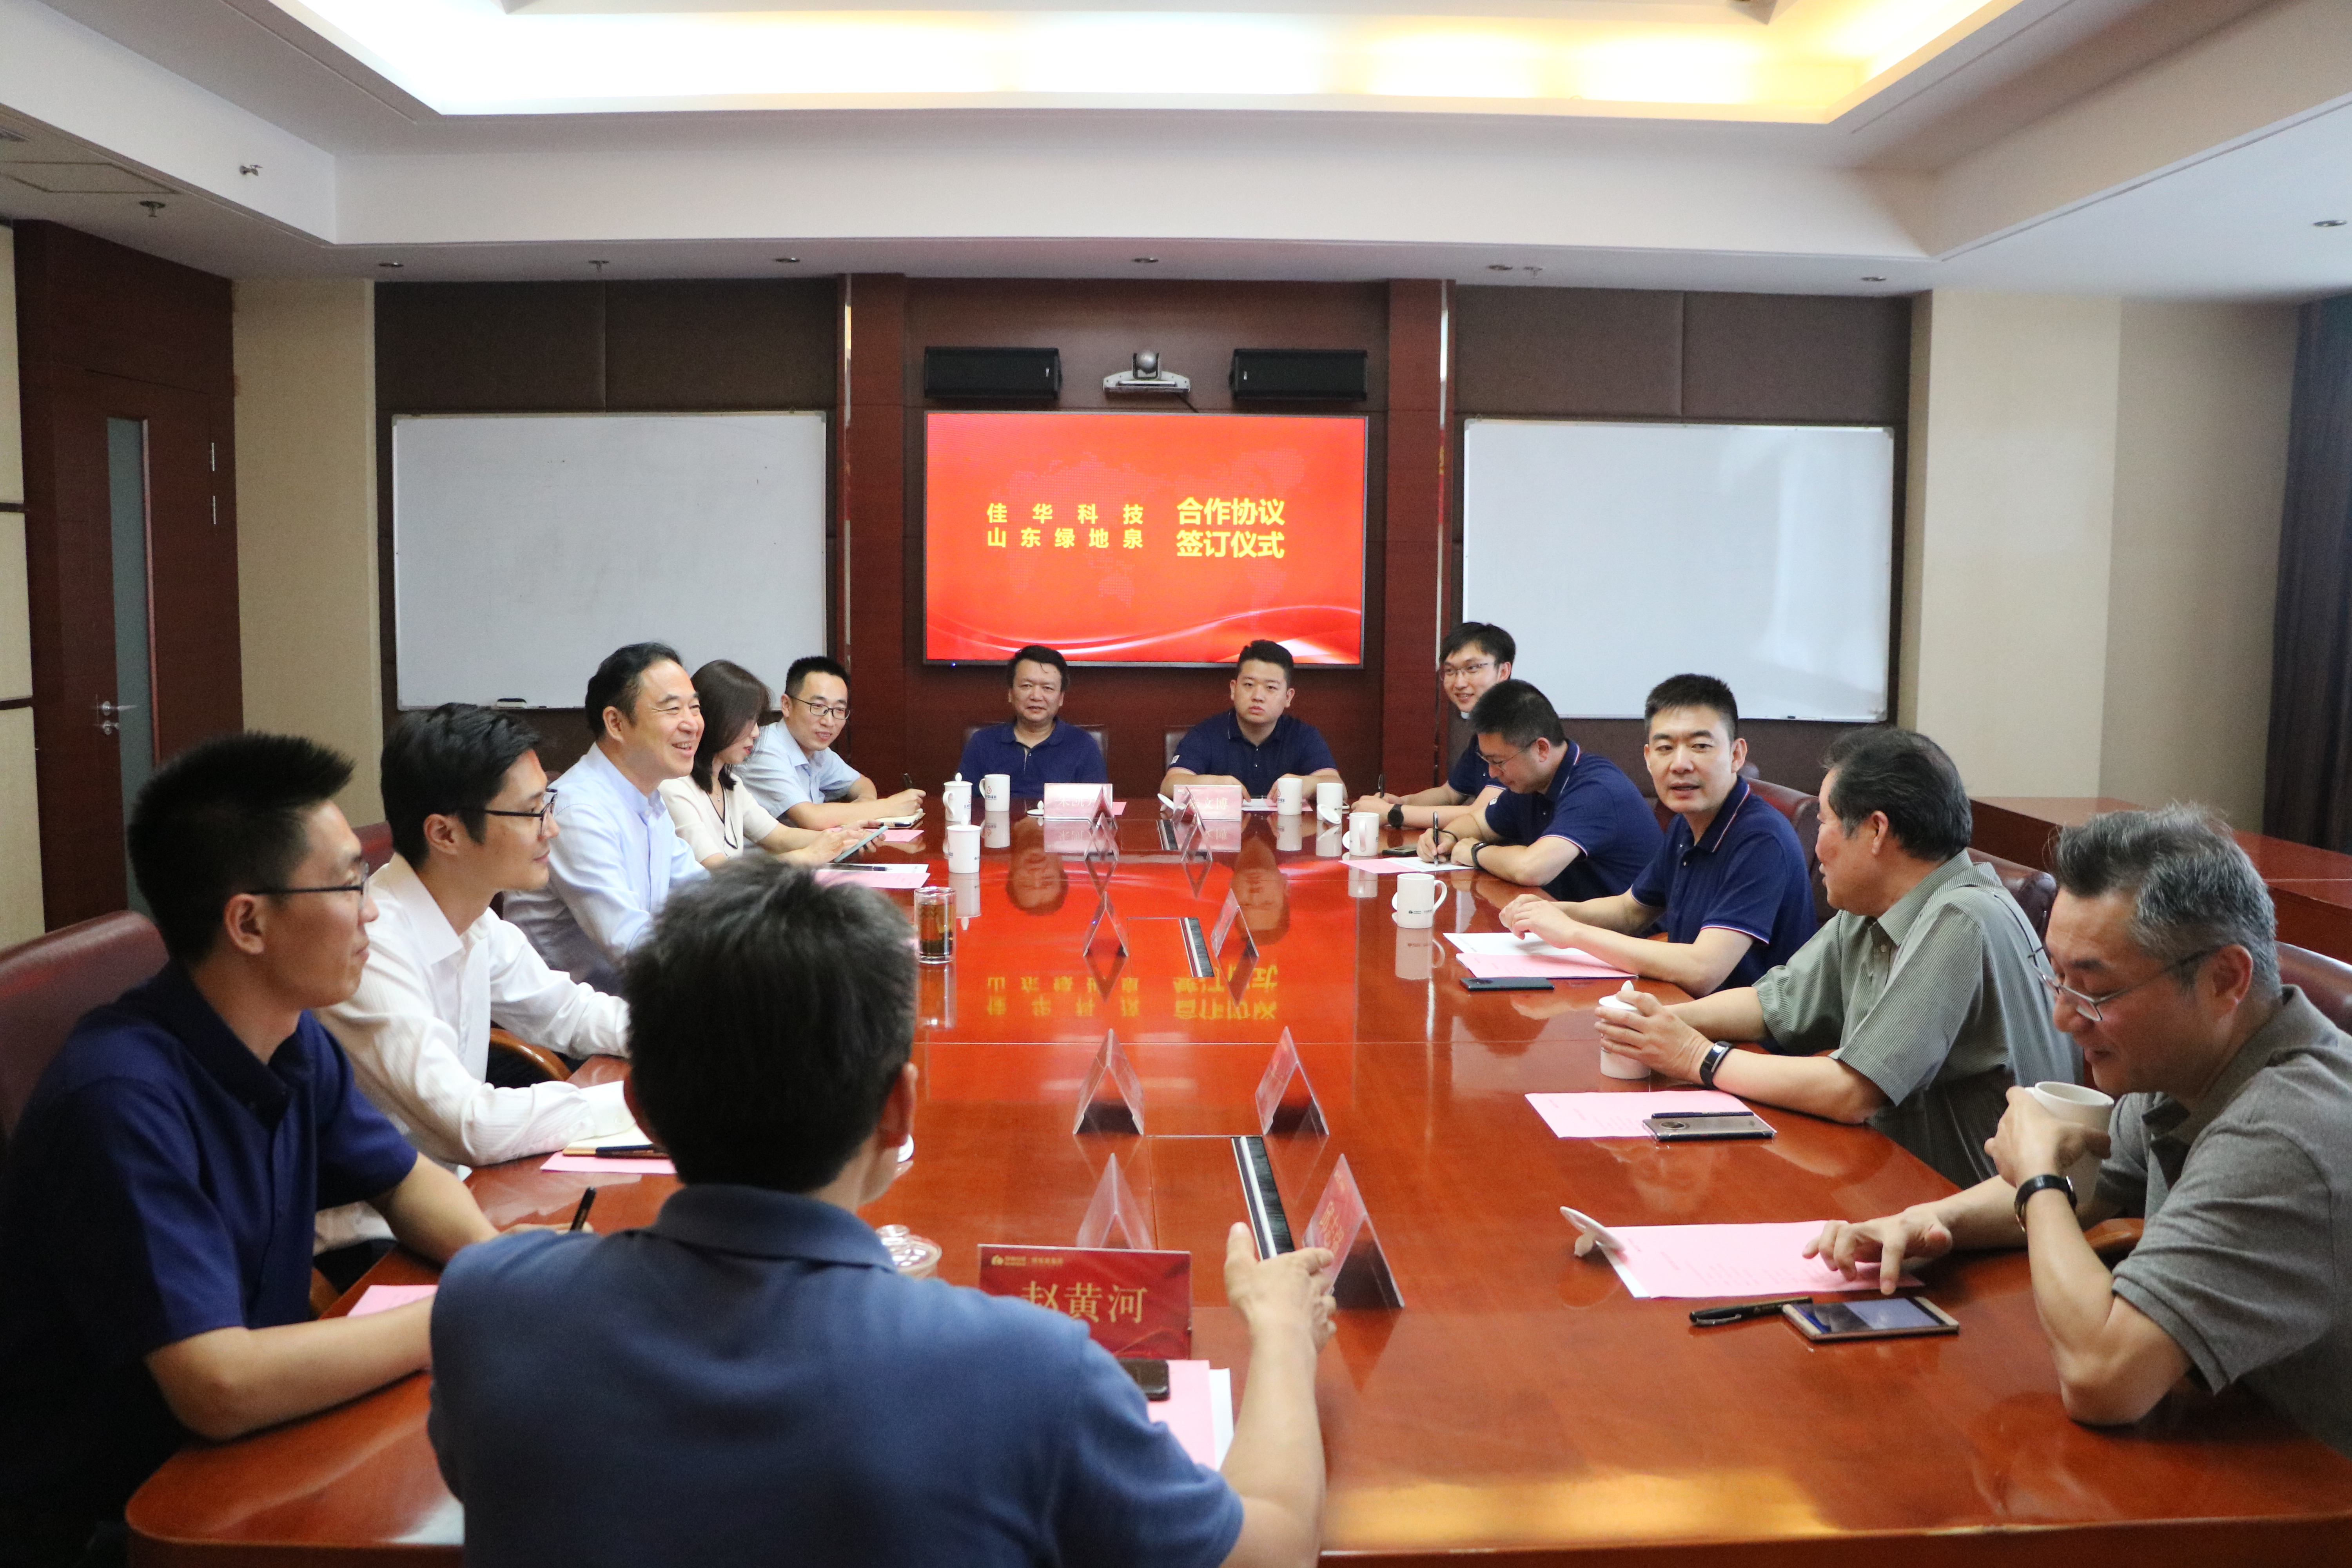 佳华科技集团与山东绿地泉集团签署战略合作协议1.jpg